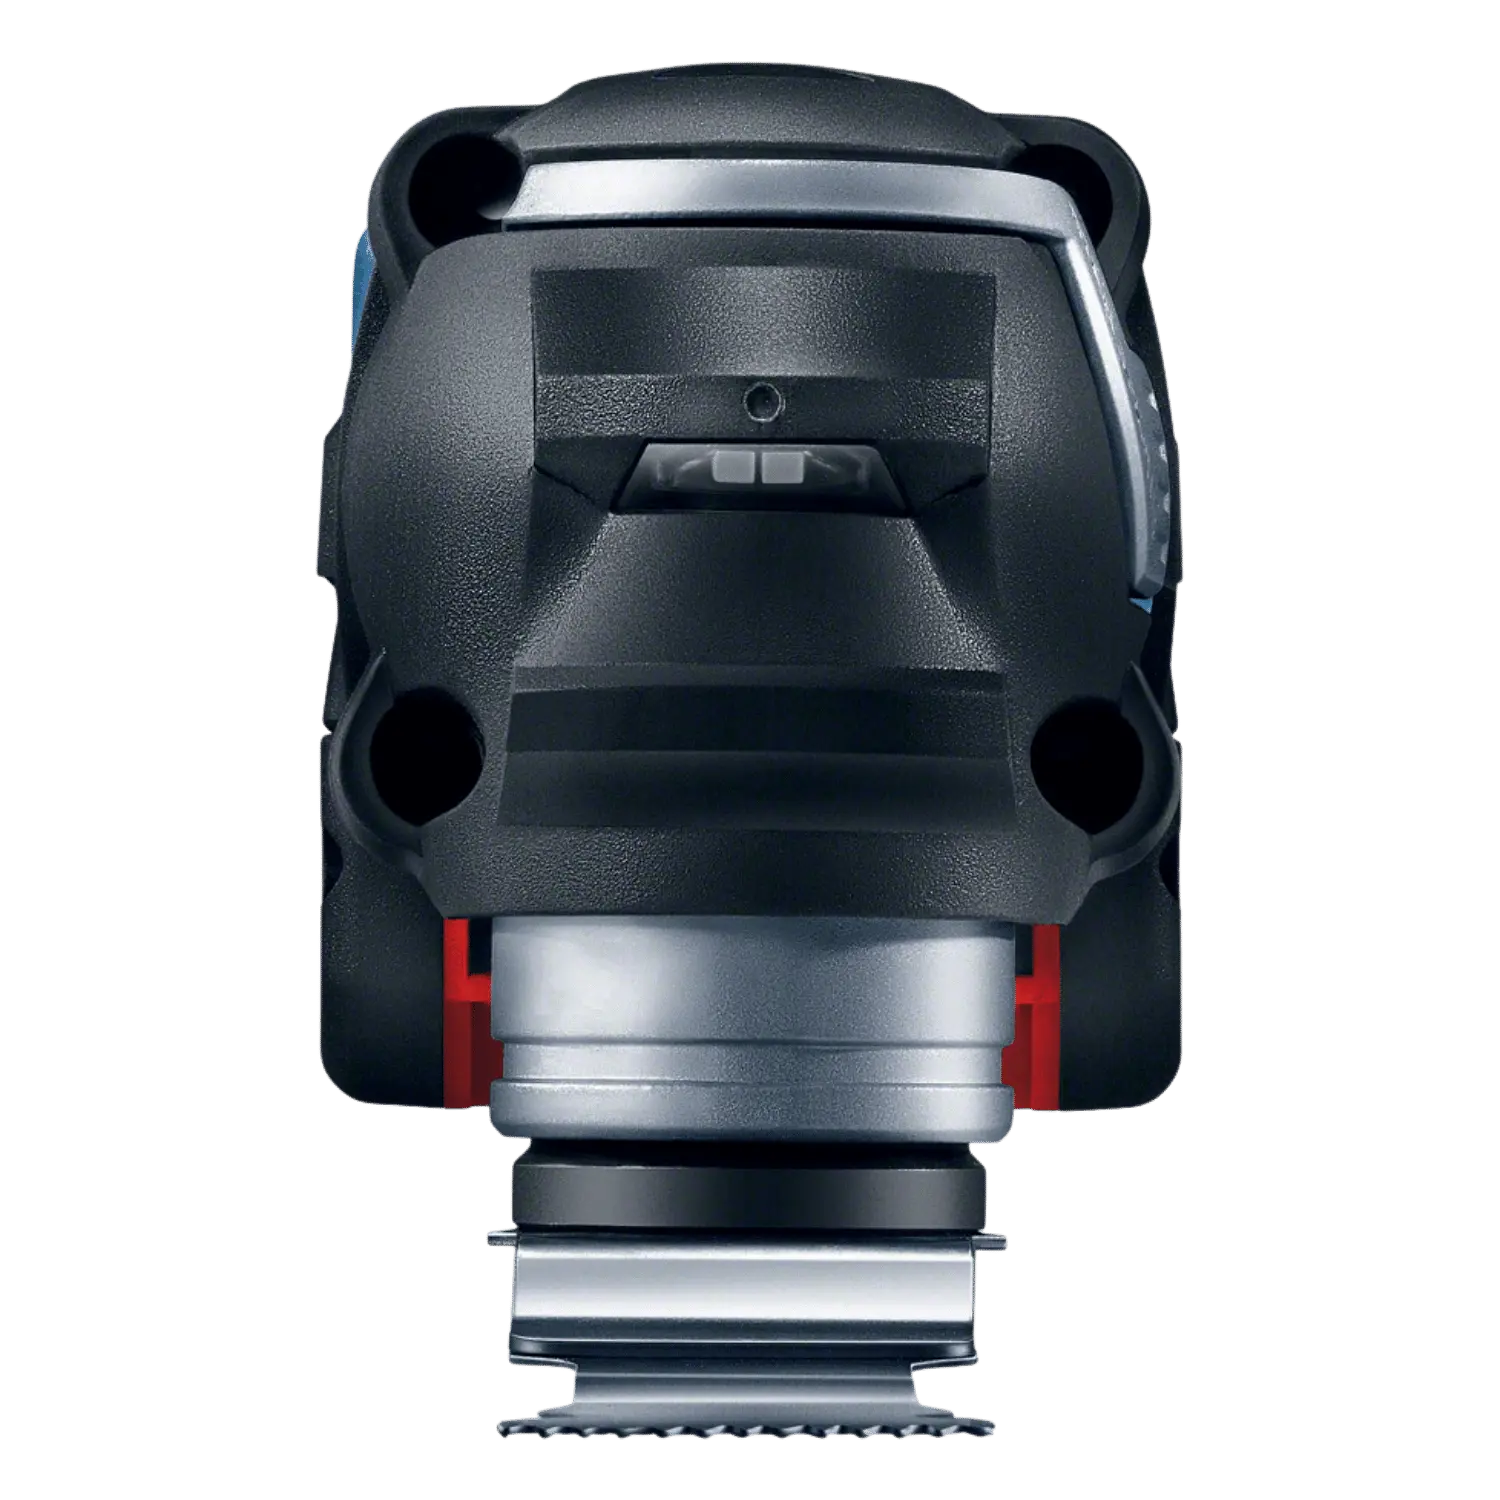 Bosch Accu Multitool GOP 18V-28: krachtig draadloos gereedschap met 18 V vermogen, zonder accu. Handig en veelzijdig voor diverse klussen.